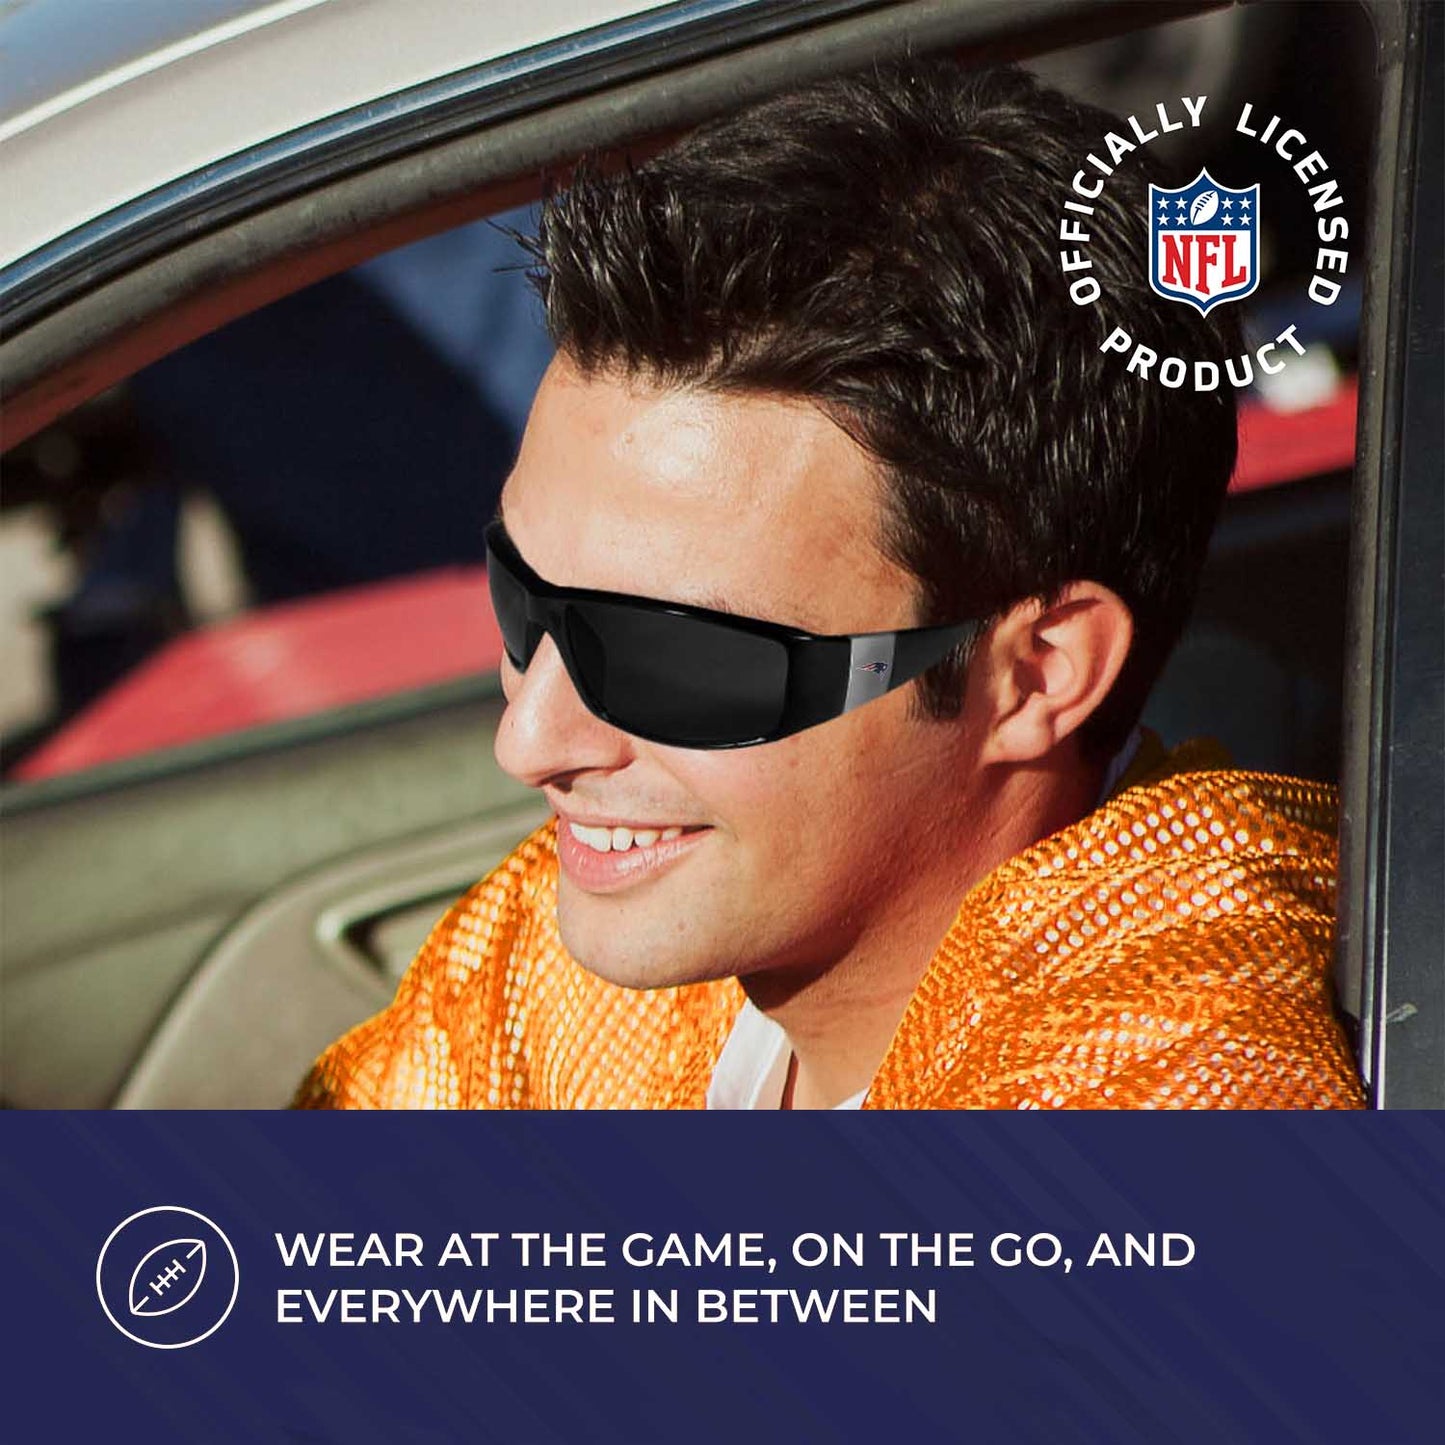 New England Patriots NFL Black Chrome Sunglasses with Visor Clip Bundle - Black